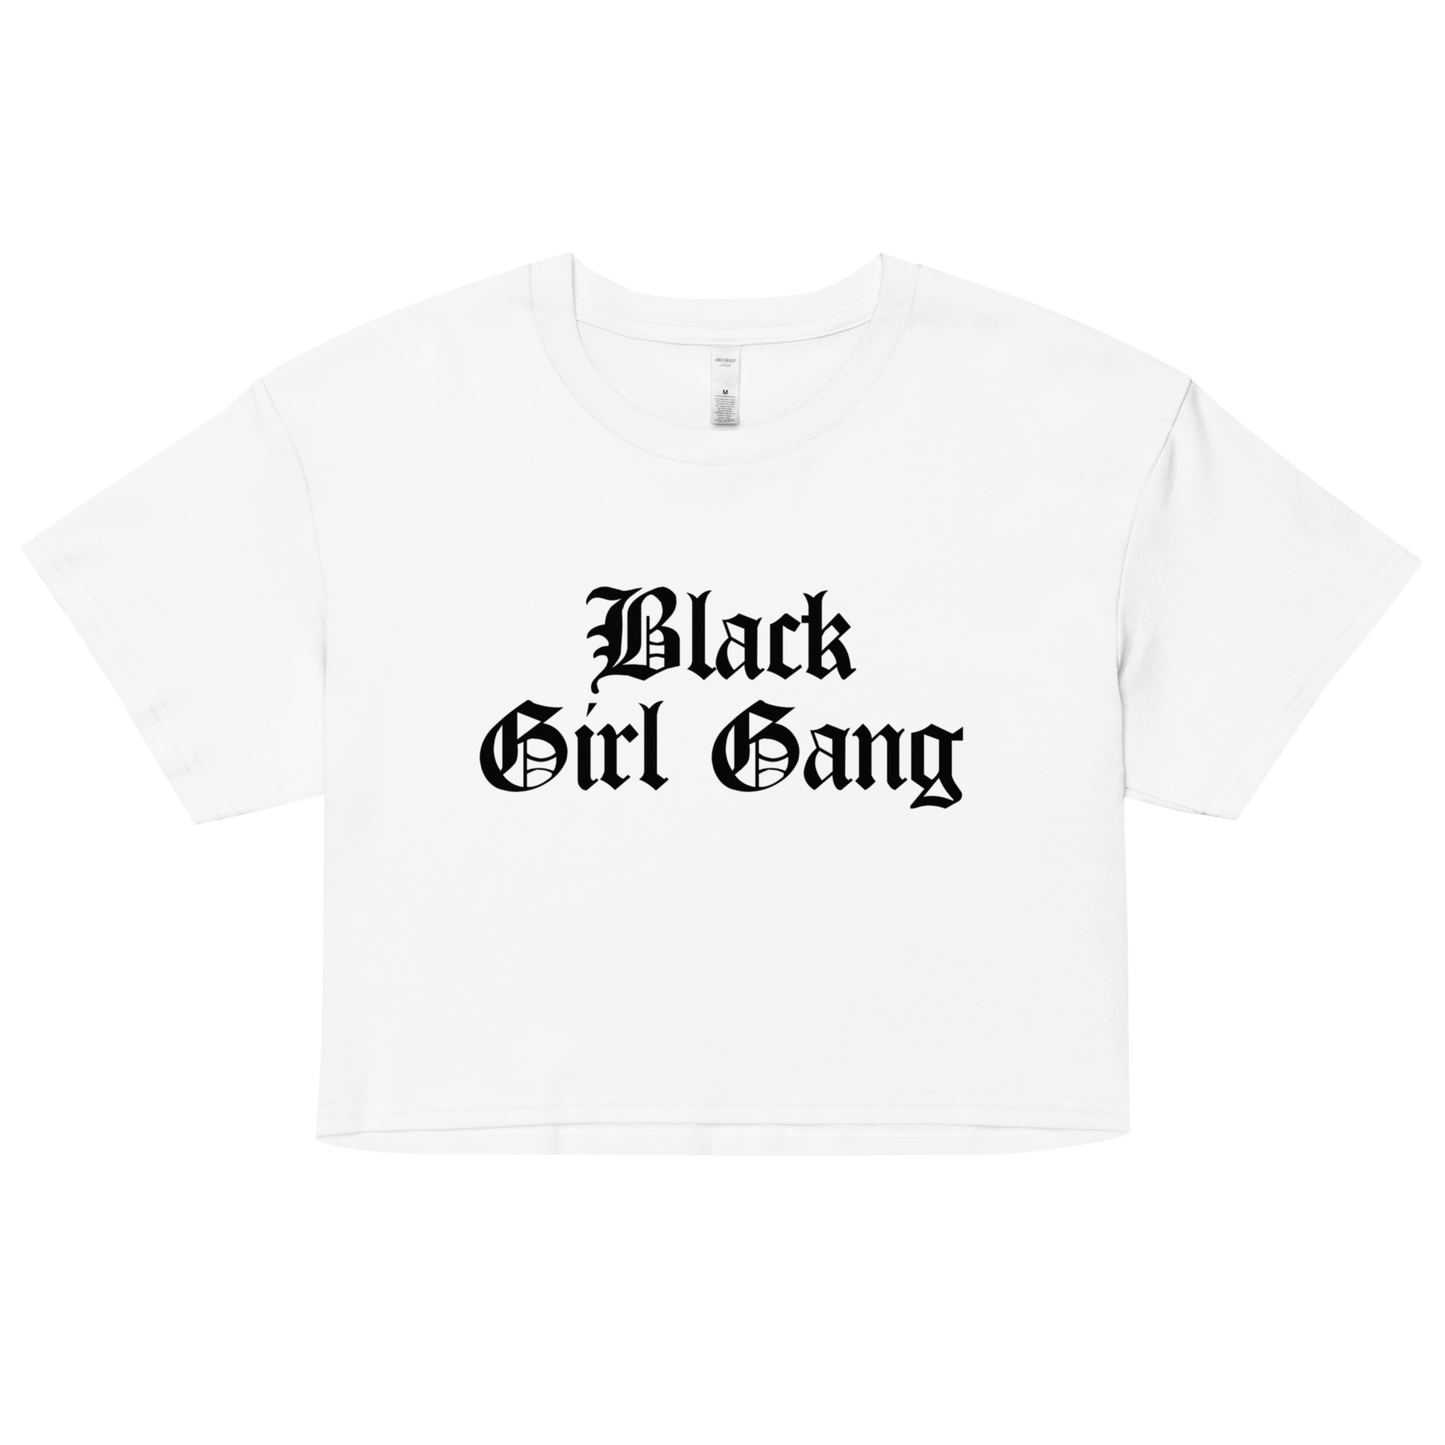 Black Girl Gang Crop Top